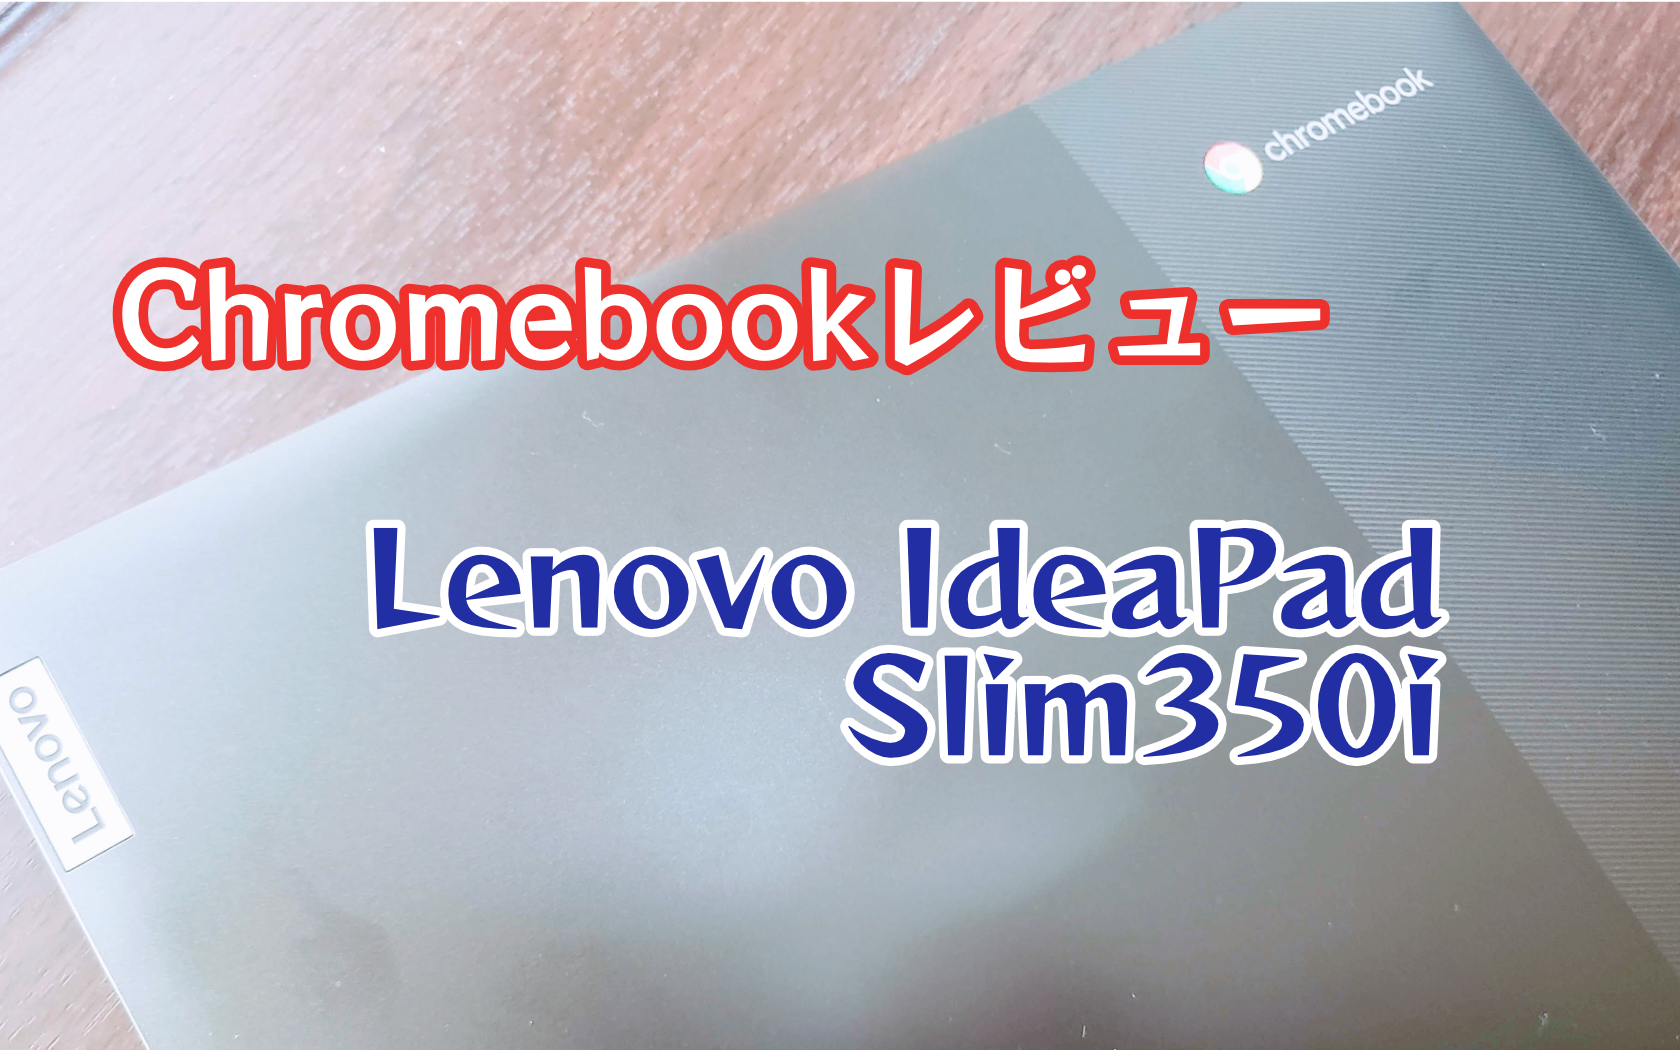 IdeaPad Slim350i Chromebook Lenovo レビュー 値段なりのノートPC - しあわせなITせいかつ